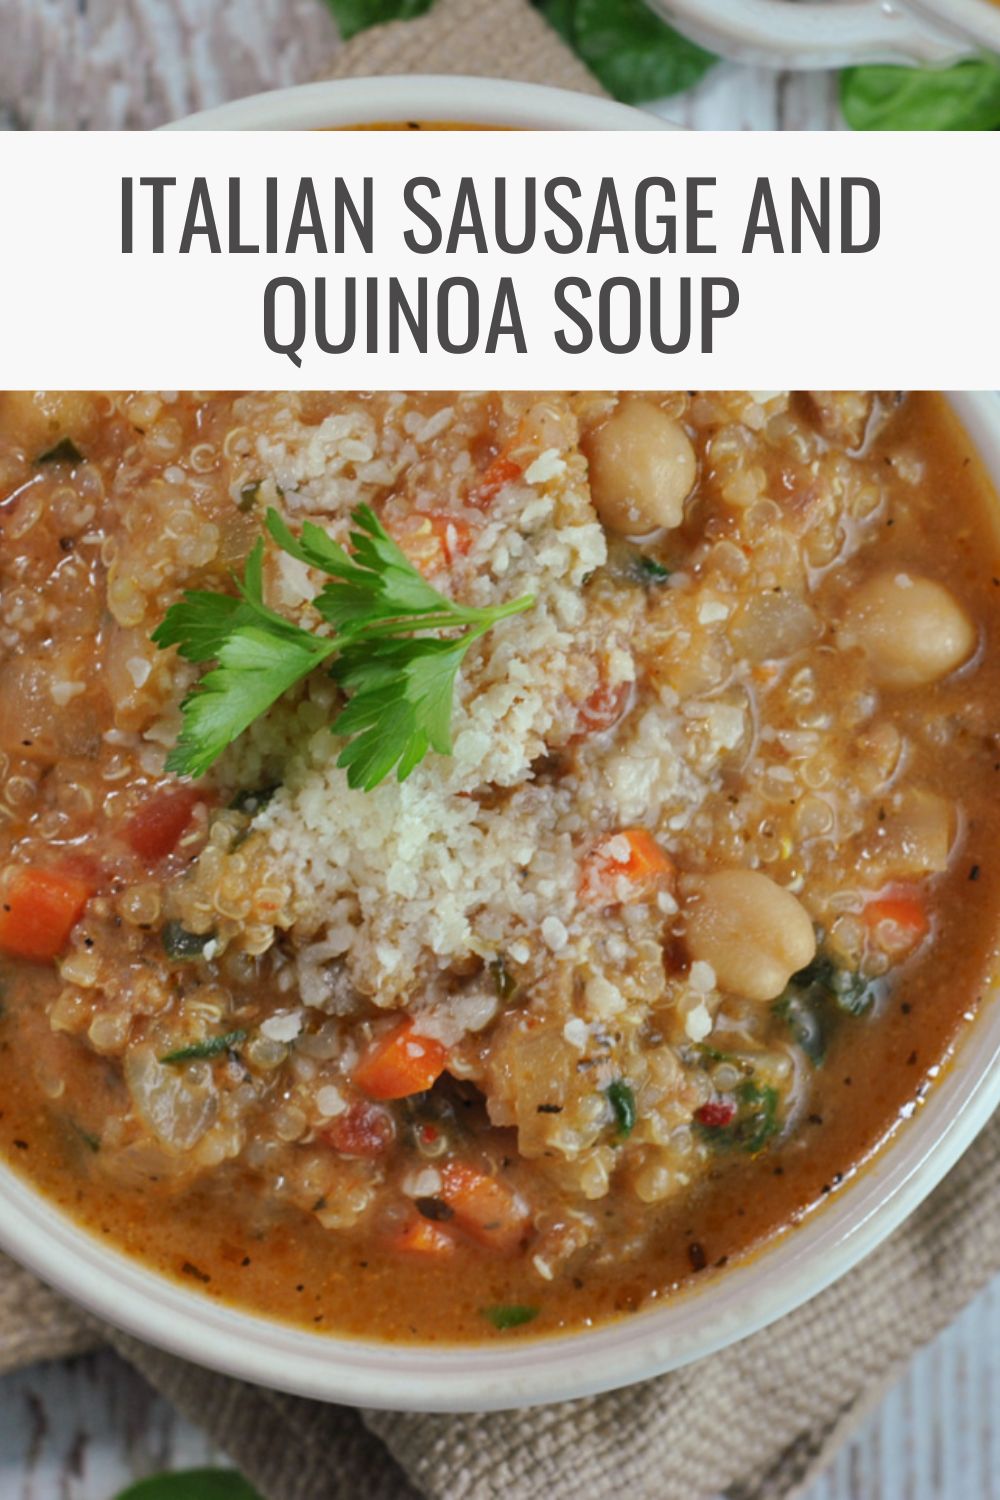 Italian Sausage and Quinoa Soup via @preventionrd